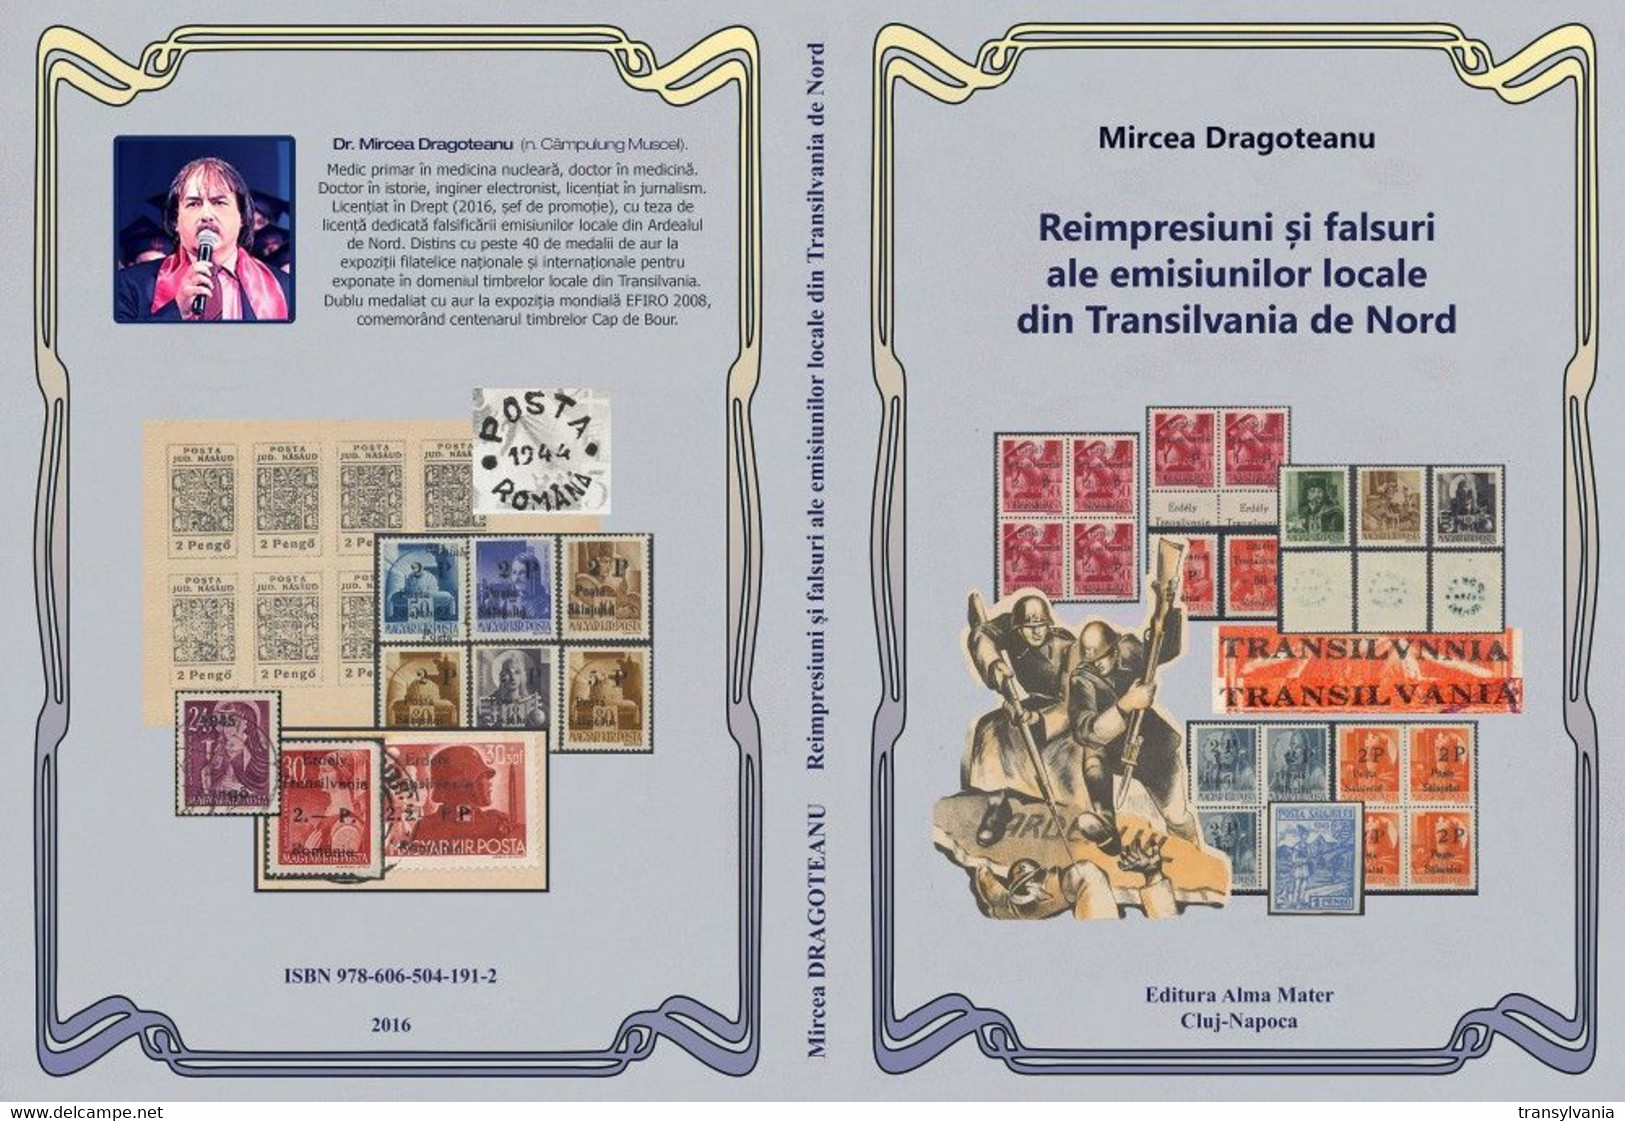 Mircea Dragoteanu (2016) Northern Transylvania 1944-45 Reprints & Forgeries Book - Tg.Mures Sighet Odorhei Oradea Salaj - Local Post Stamps